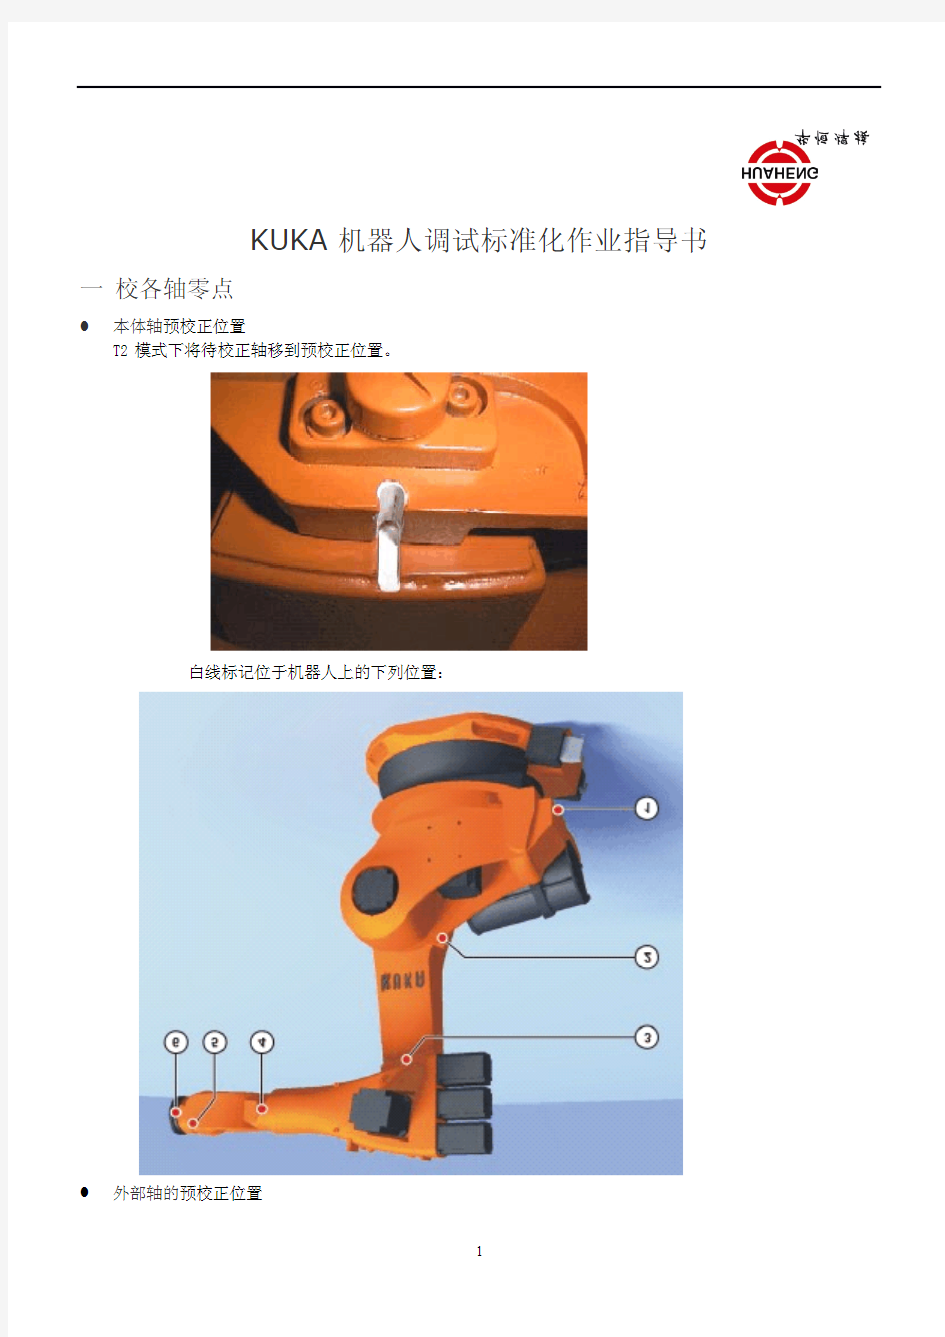 KUKA 机器人调试标准化作业指导书